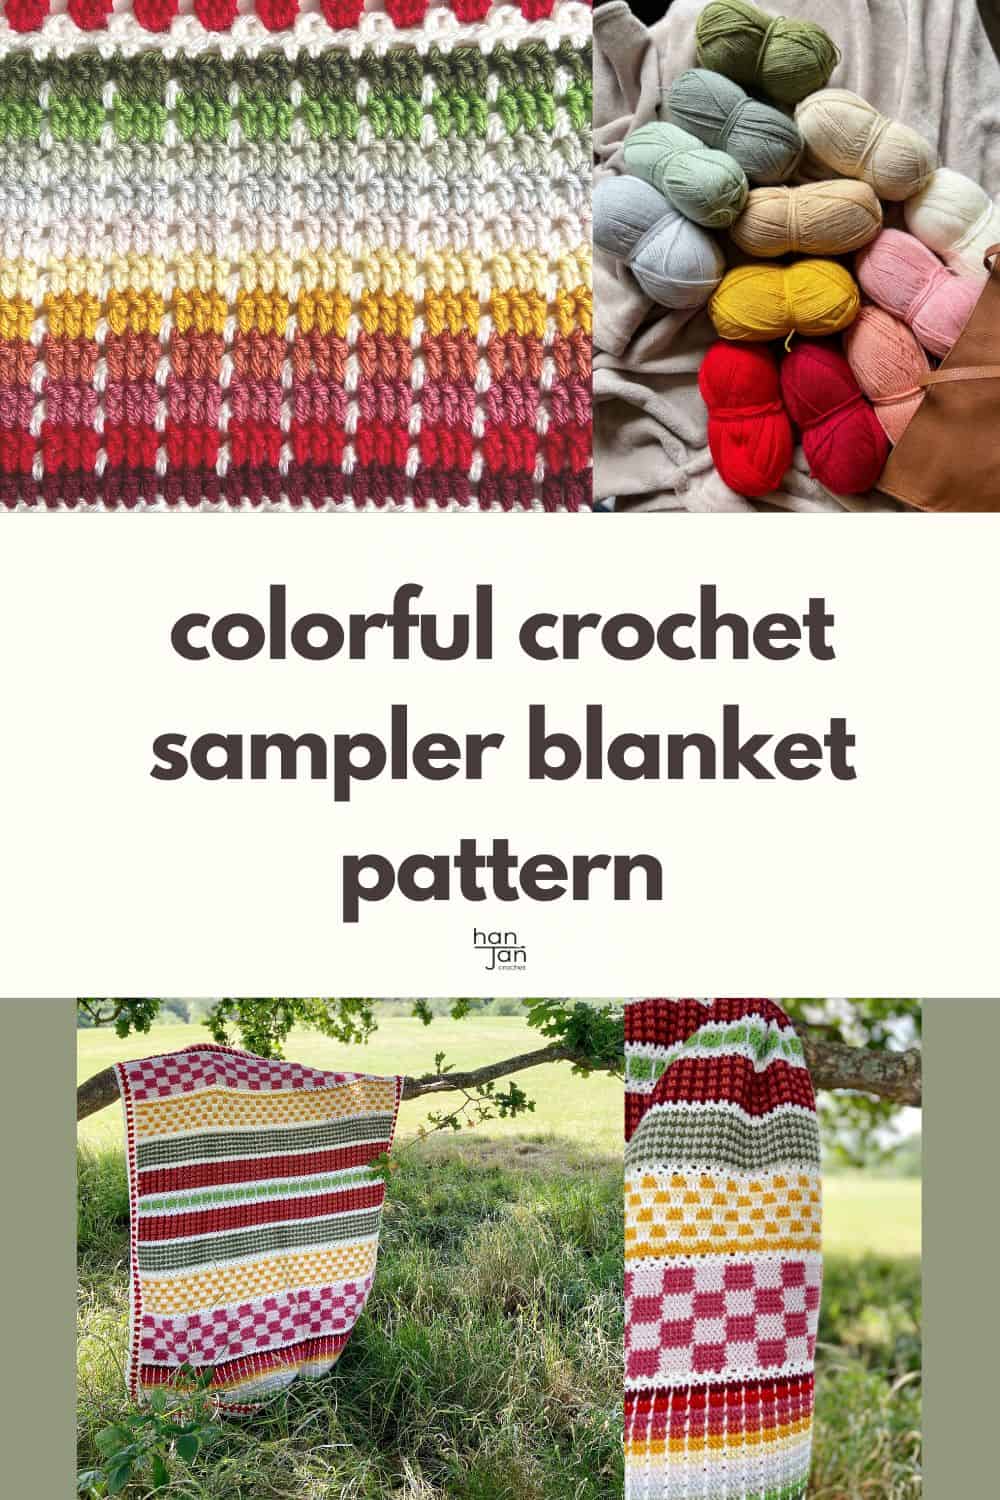 Images of colorful crochet sampler blanket pattern.